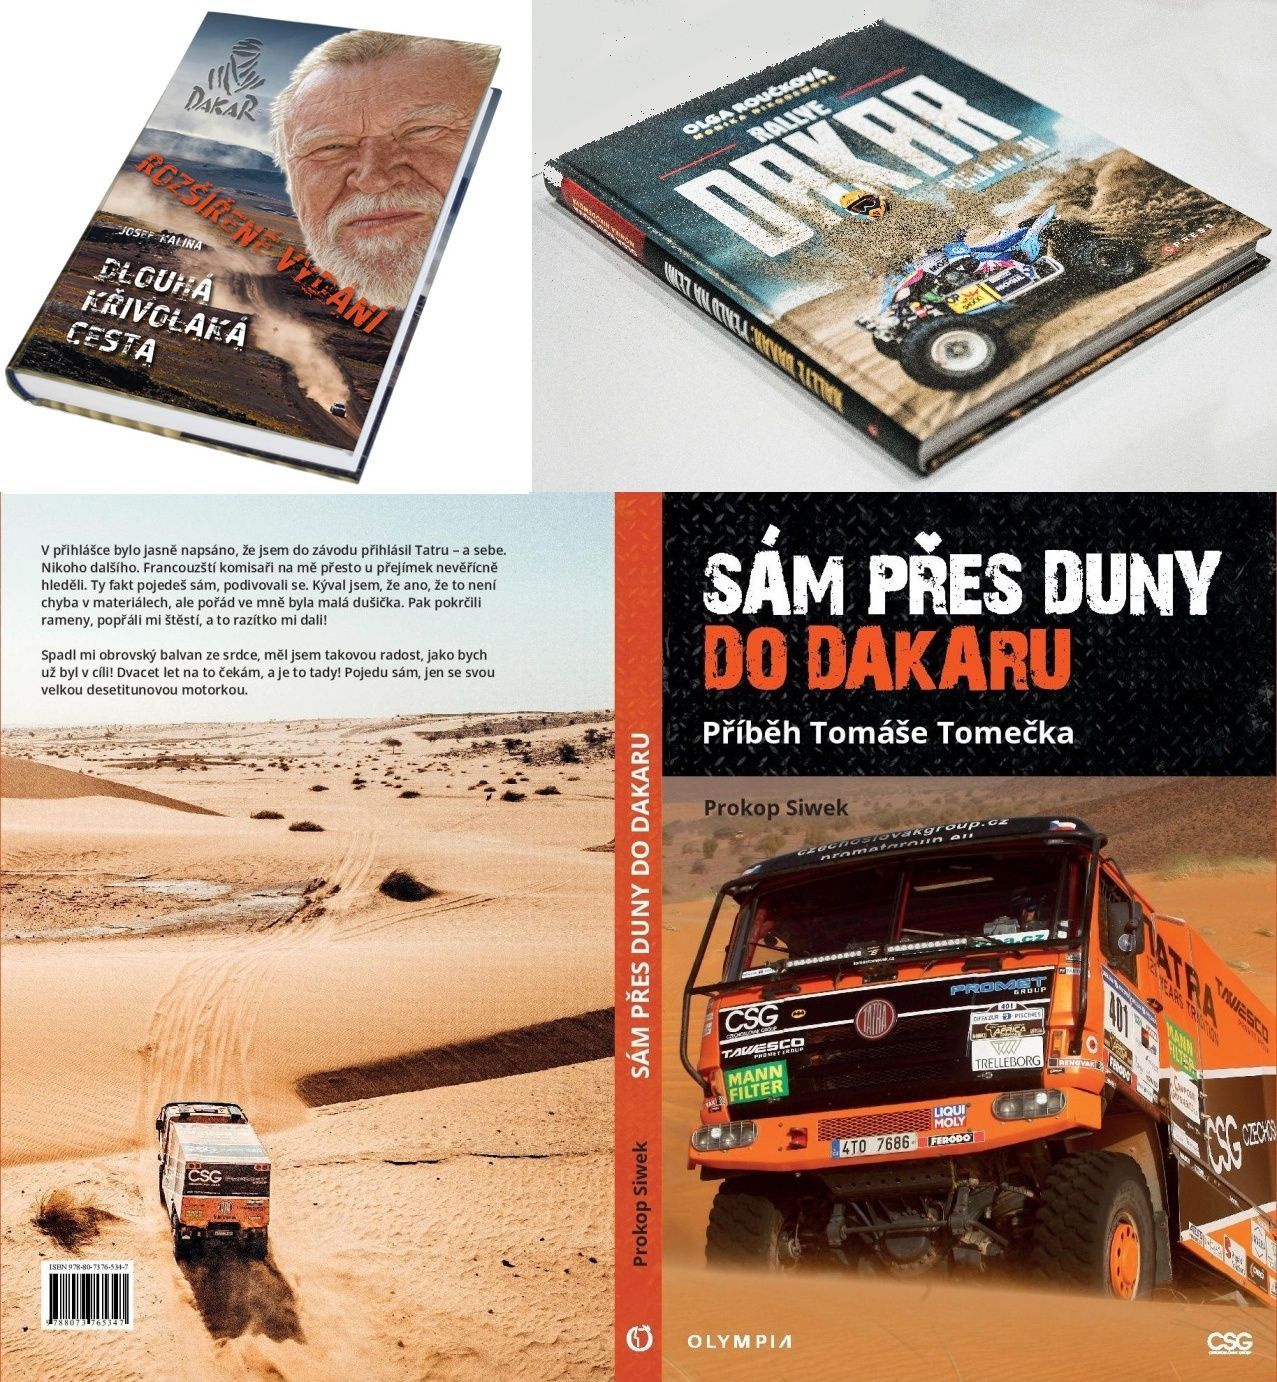 Knížky o Dakaru